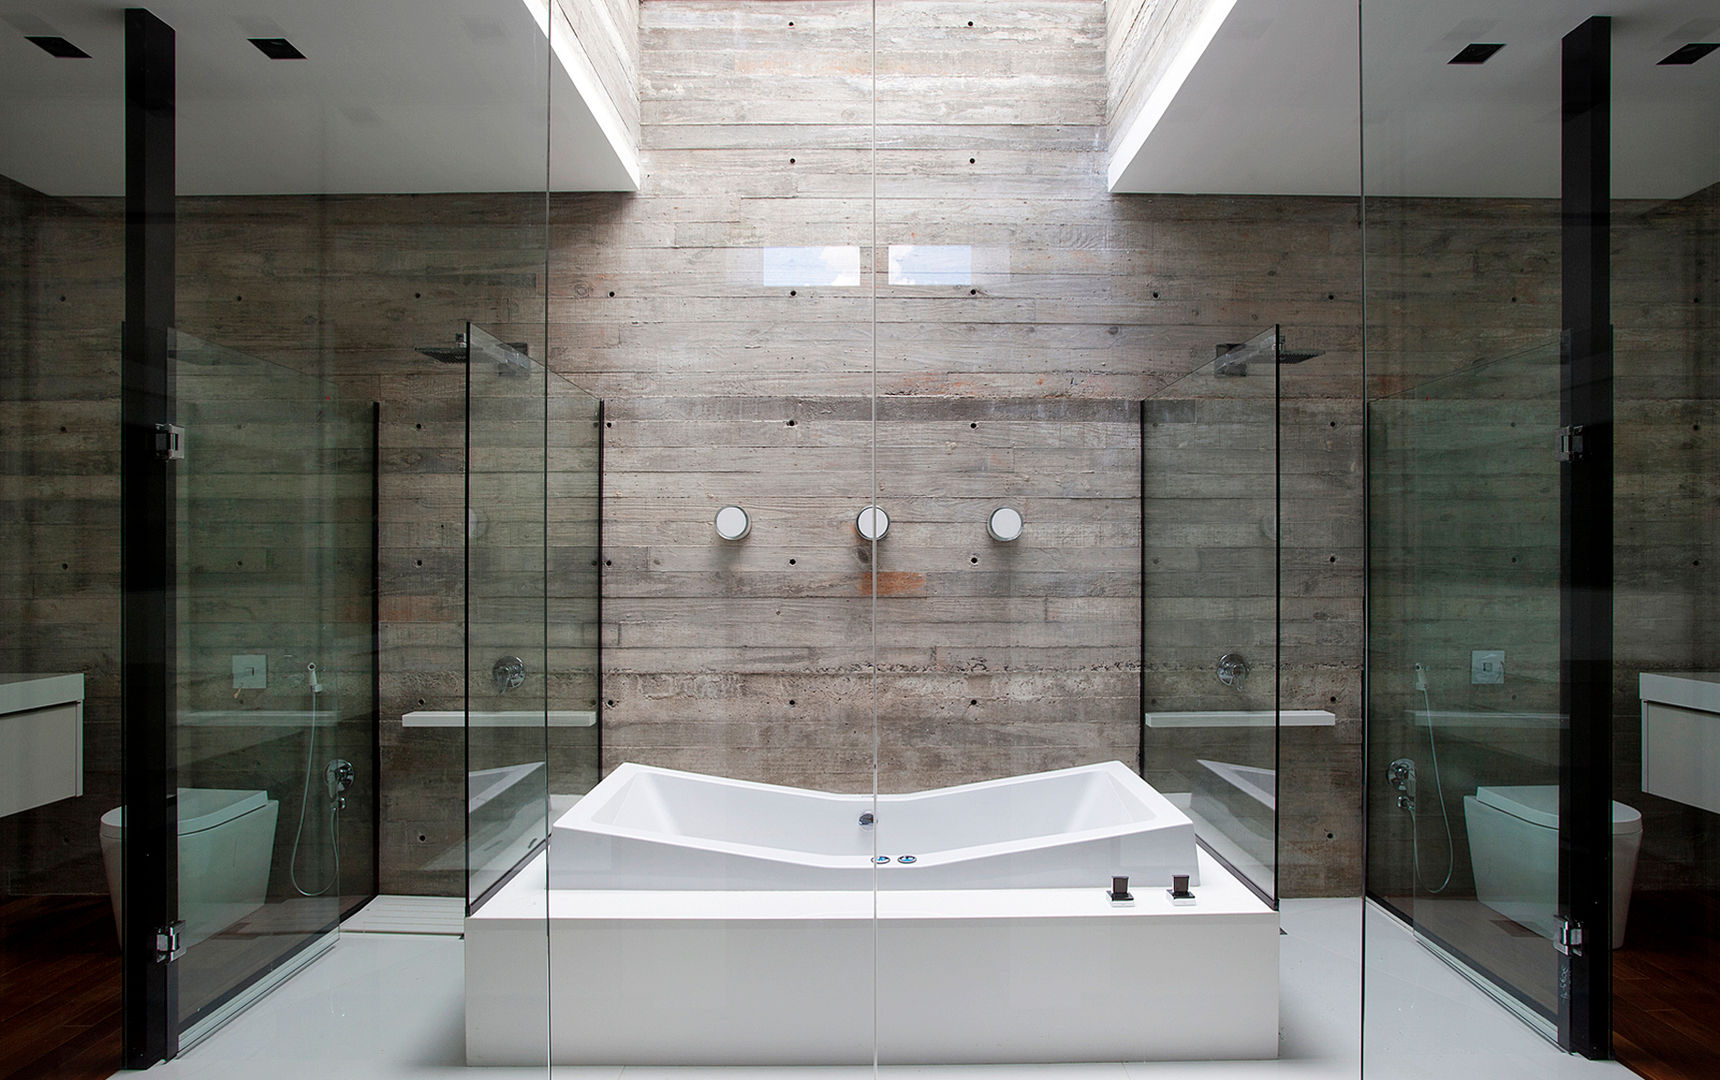 Casa | LM |, Marcos Bertoldi Marcos Bertoldi Ванная комната в стиле модерн